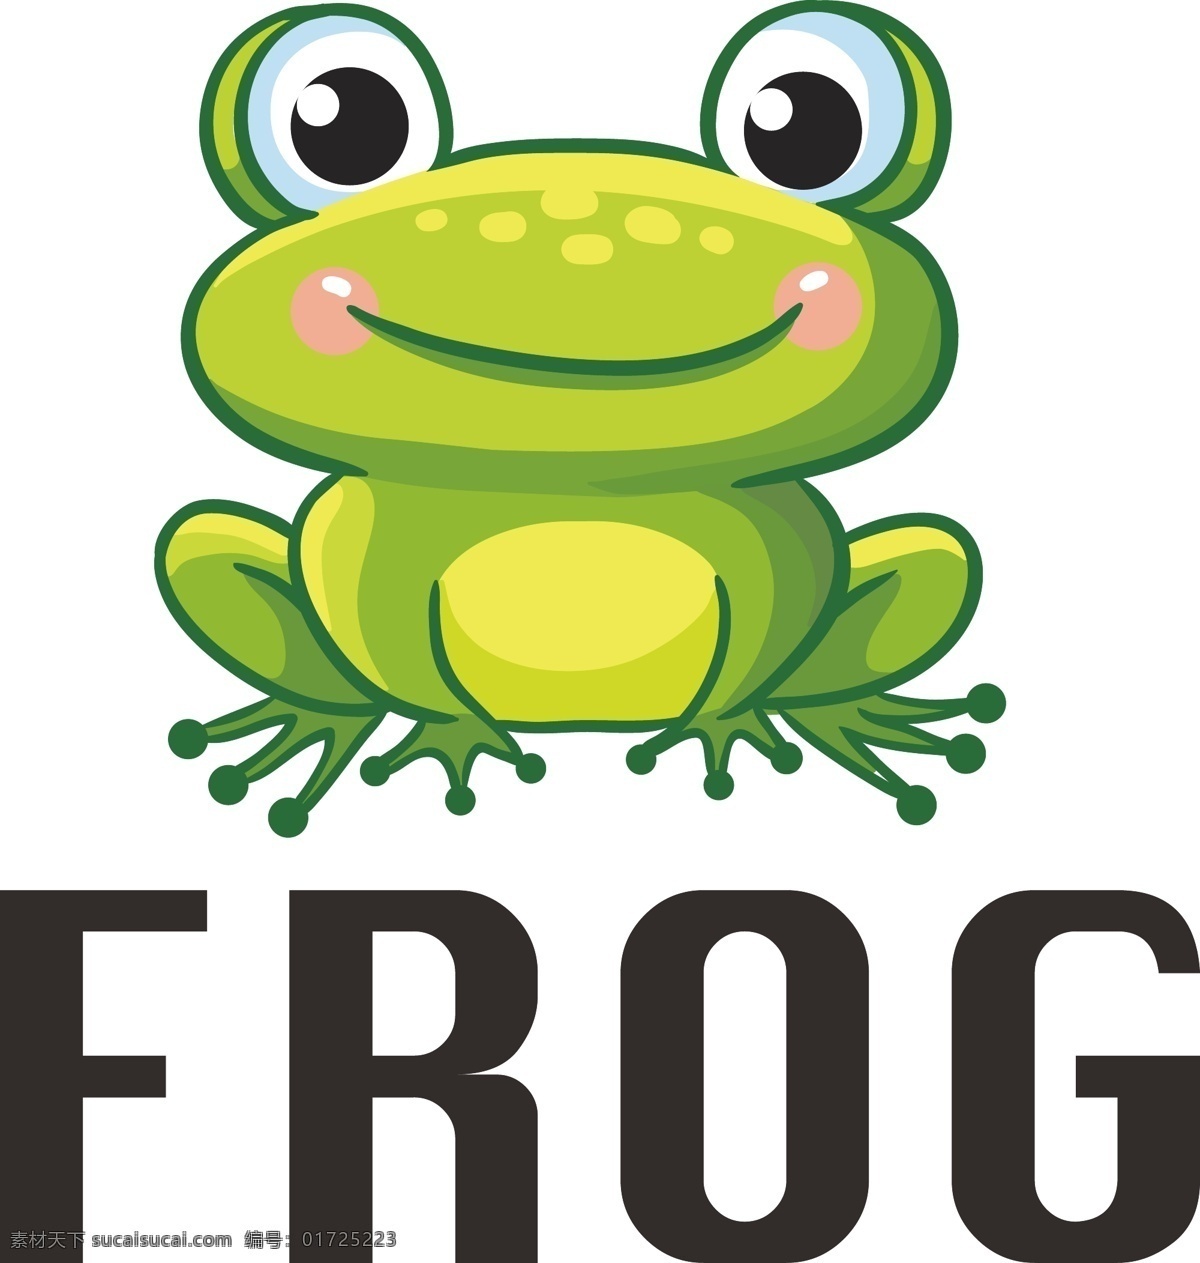 矢量 卡通 青蛙 frog 可爱青蛙 小贴纸 卡通设计